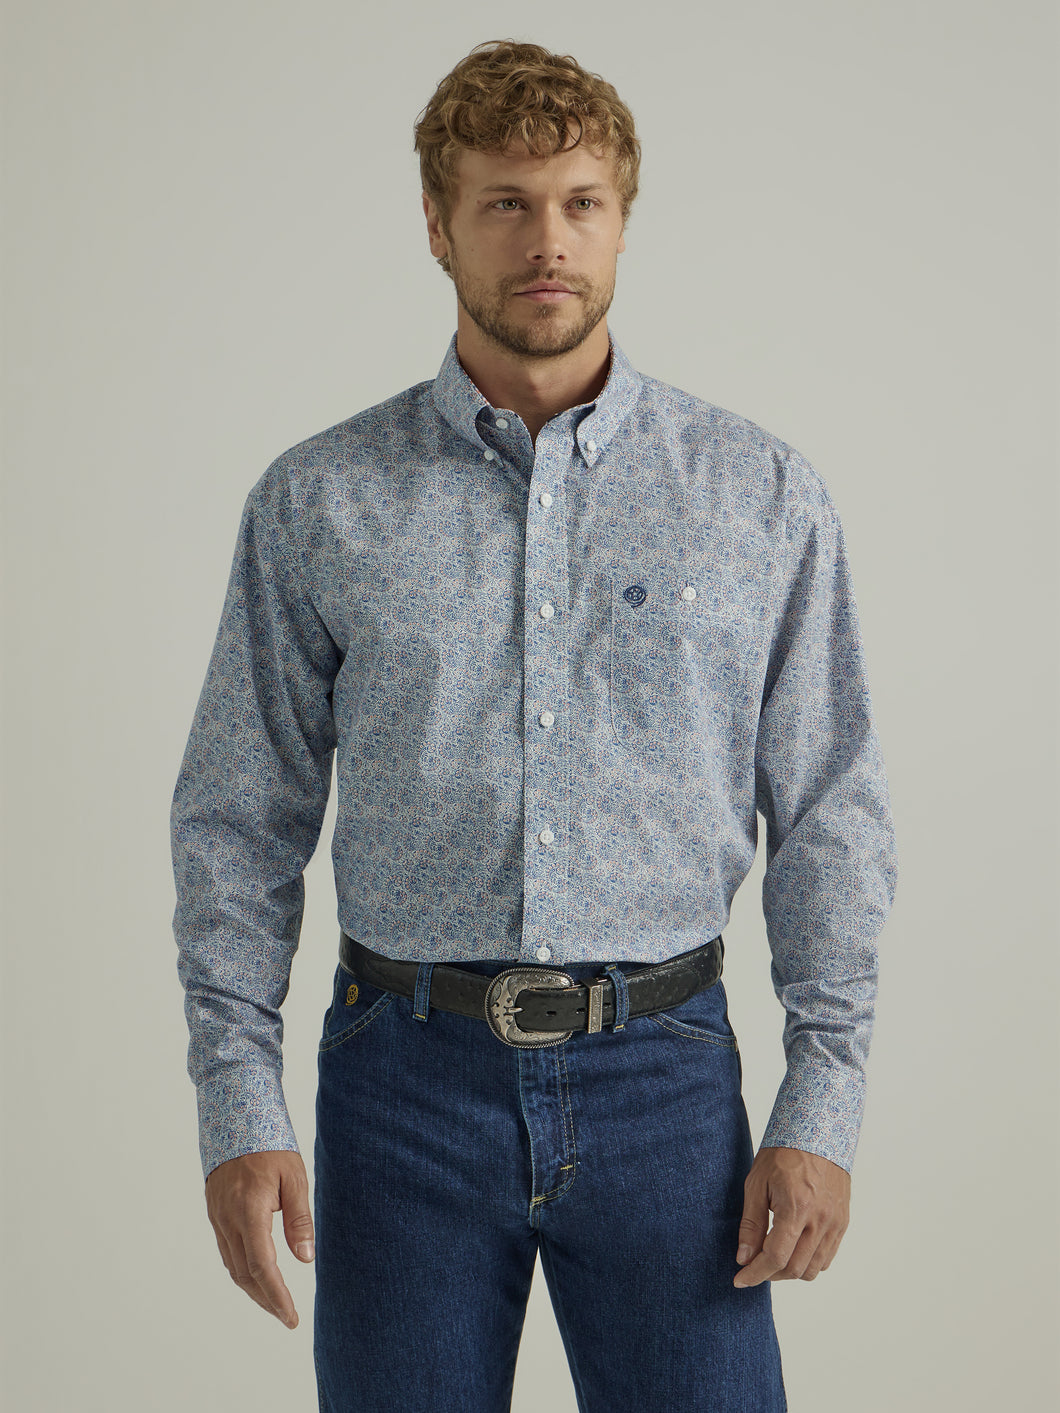 Pard's Western Shop Wrangler Men's George Strait Collection Blue/White/Orange Paisley Print Button-Down Shirt